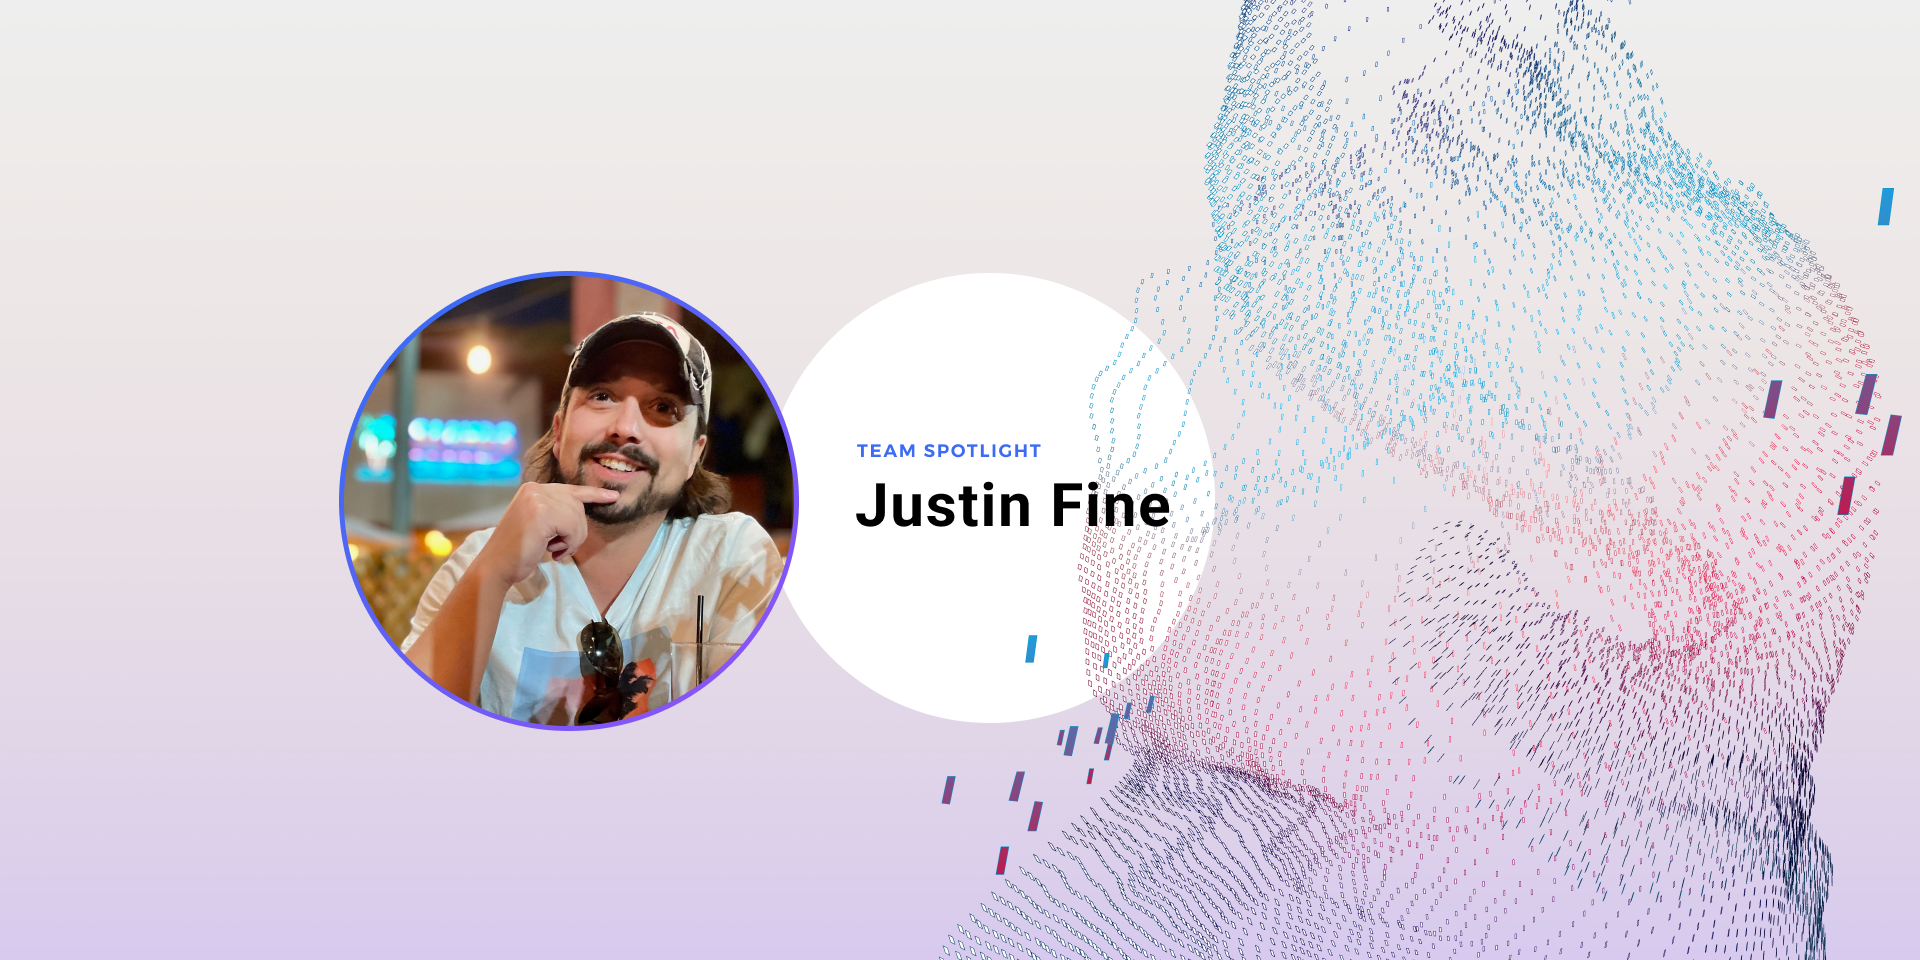 Team Spotlight - Justin Fine